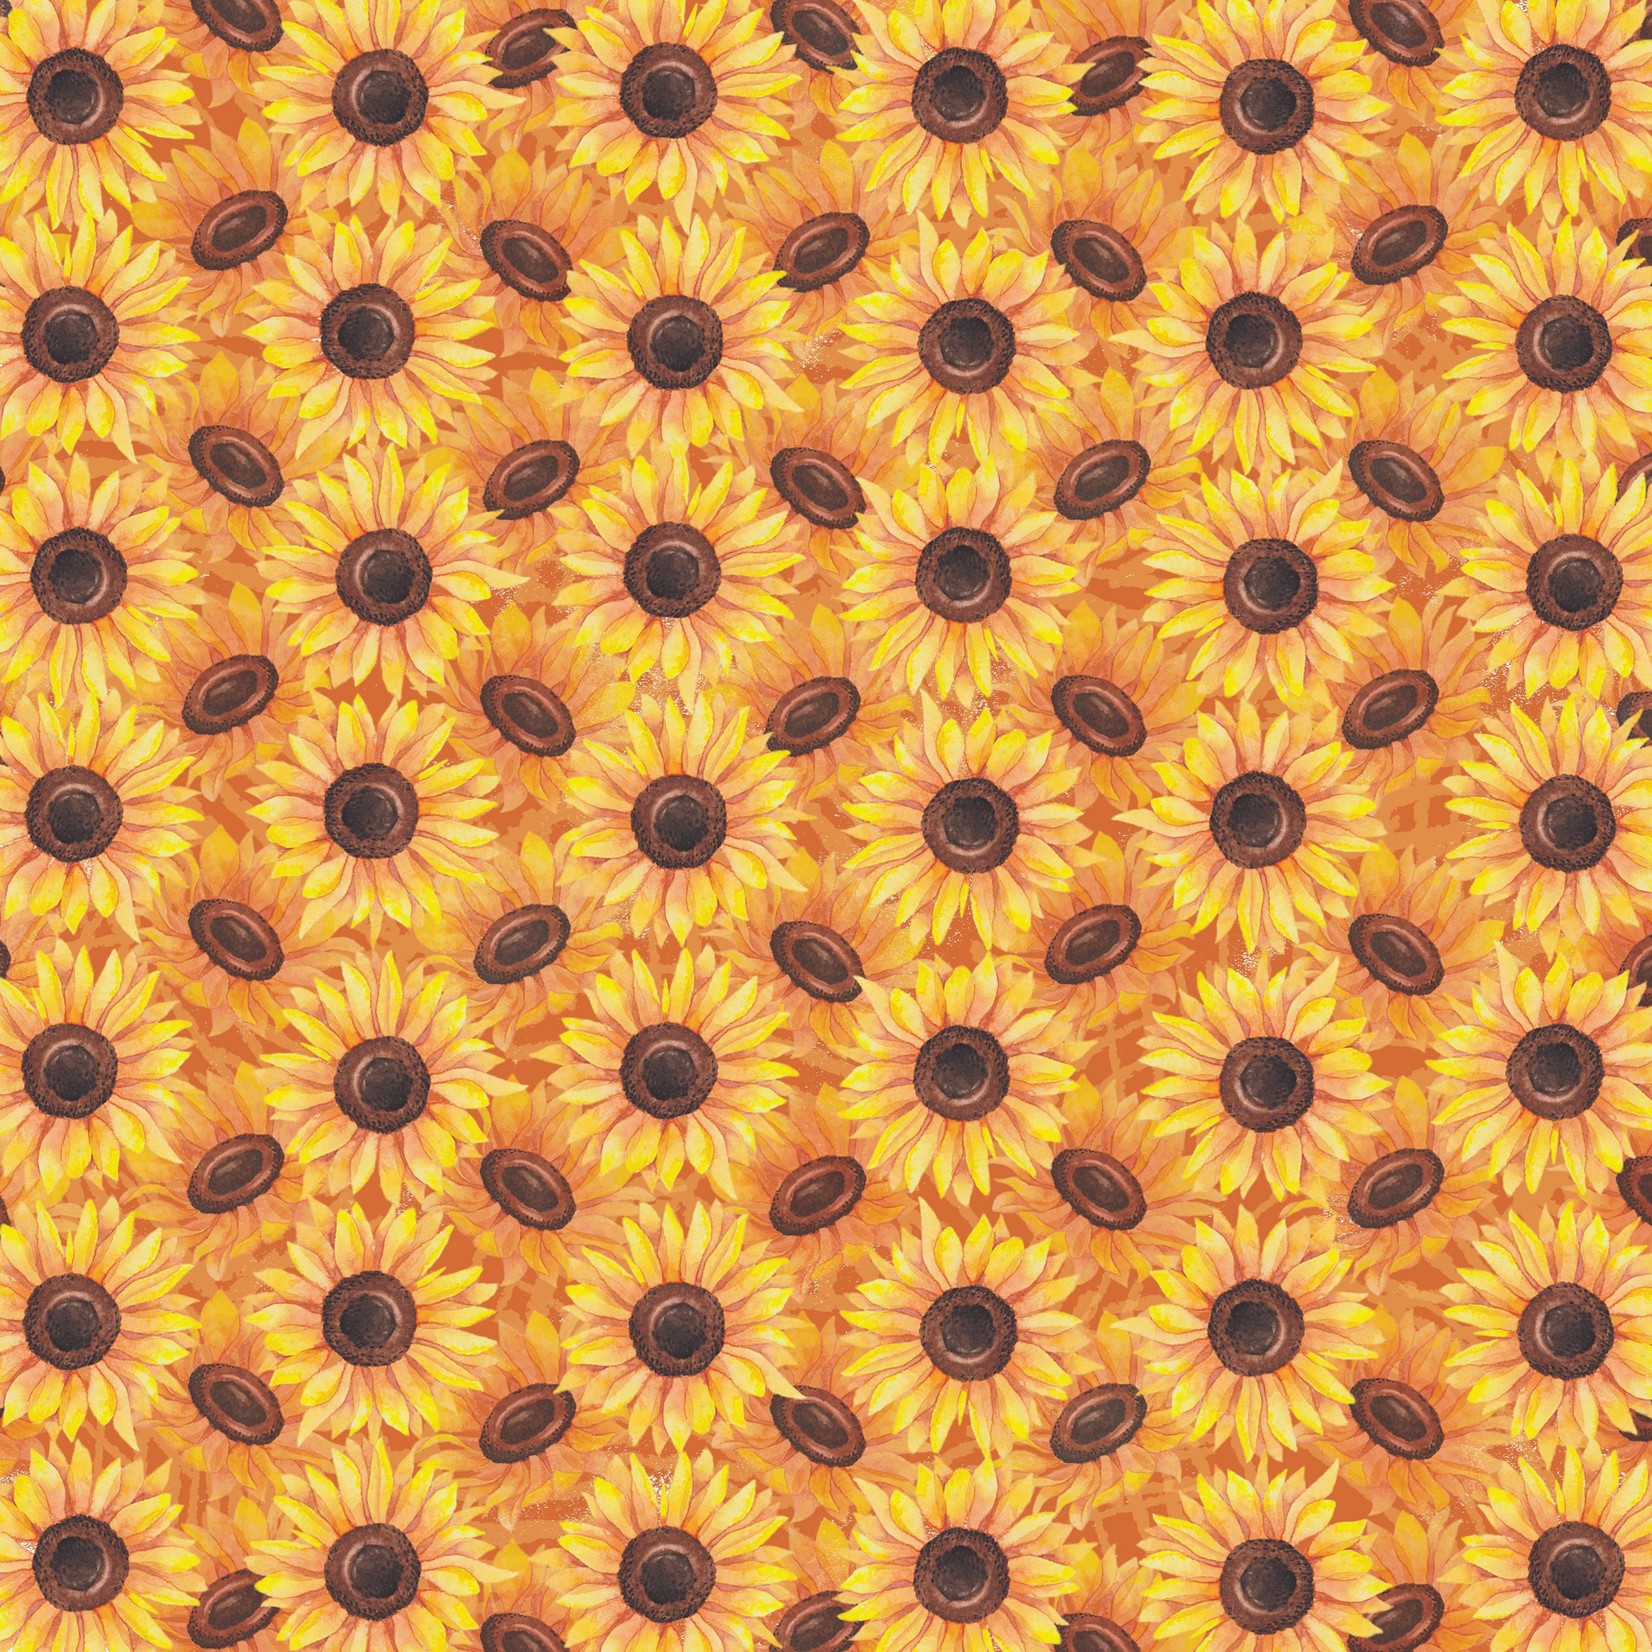 TVD Sunflowers